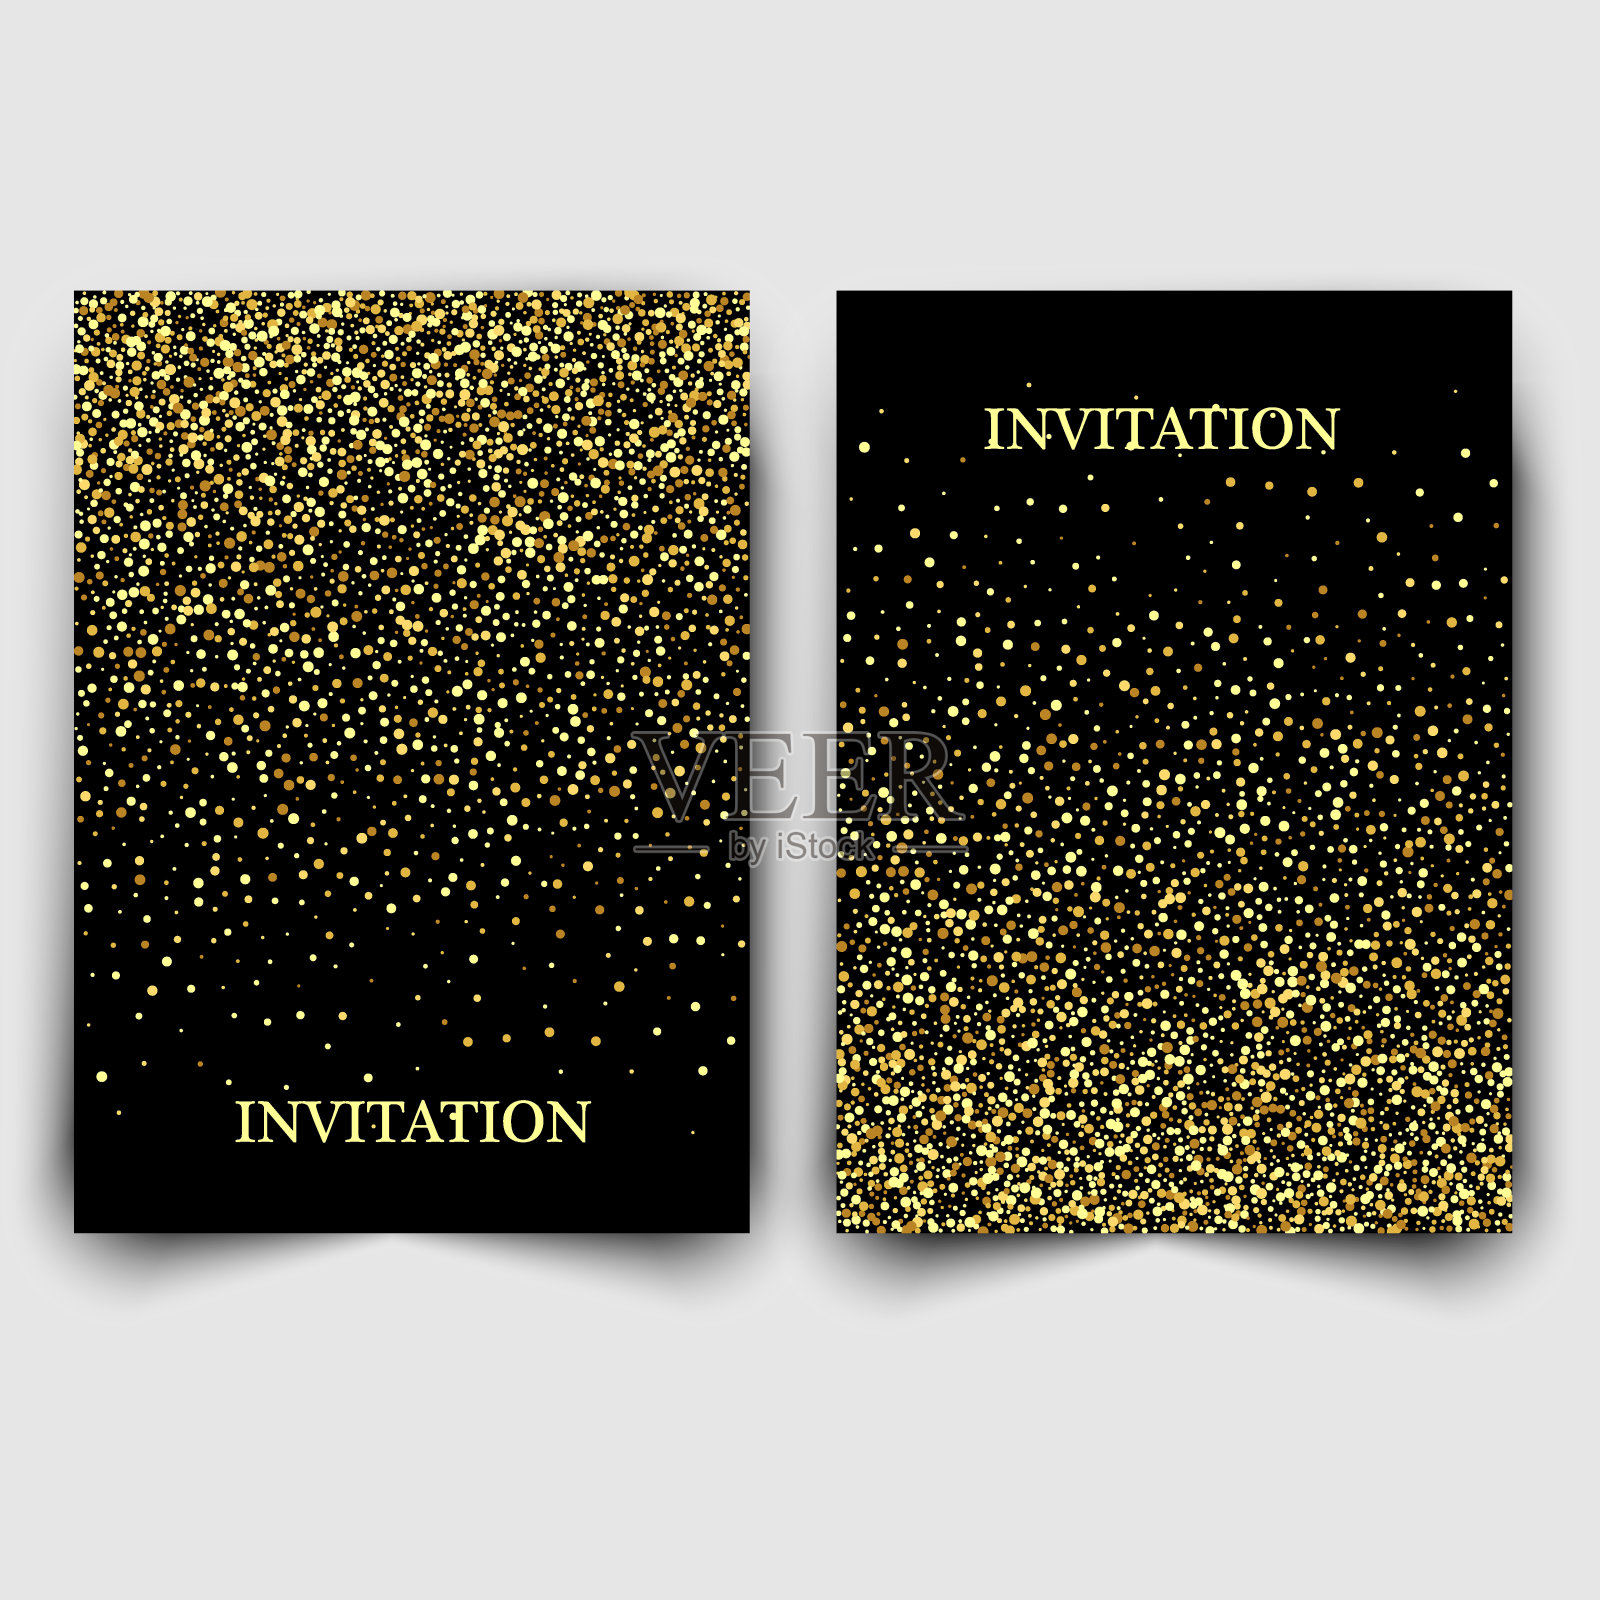 两个模板设计的邀请与黄金亮片。节日设计明信片,邀请设计模板素材